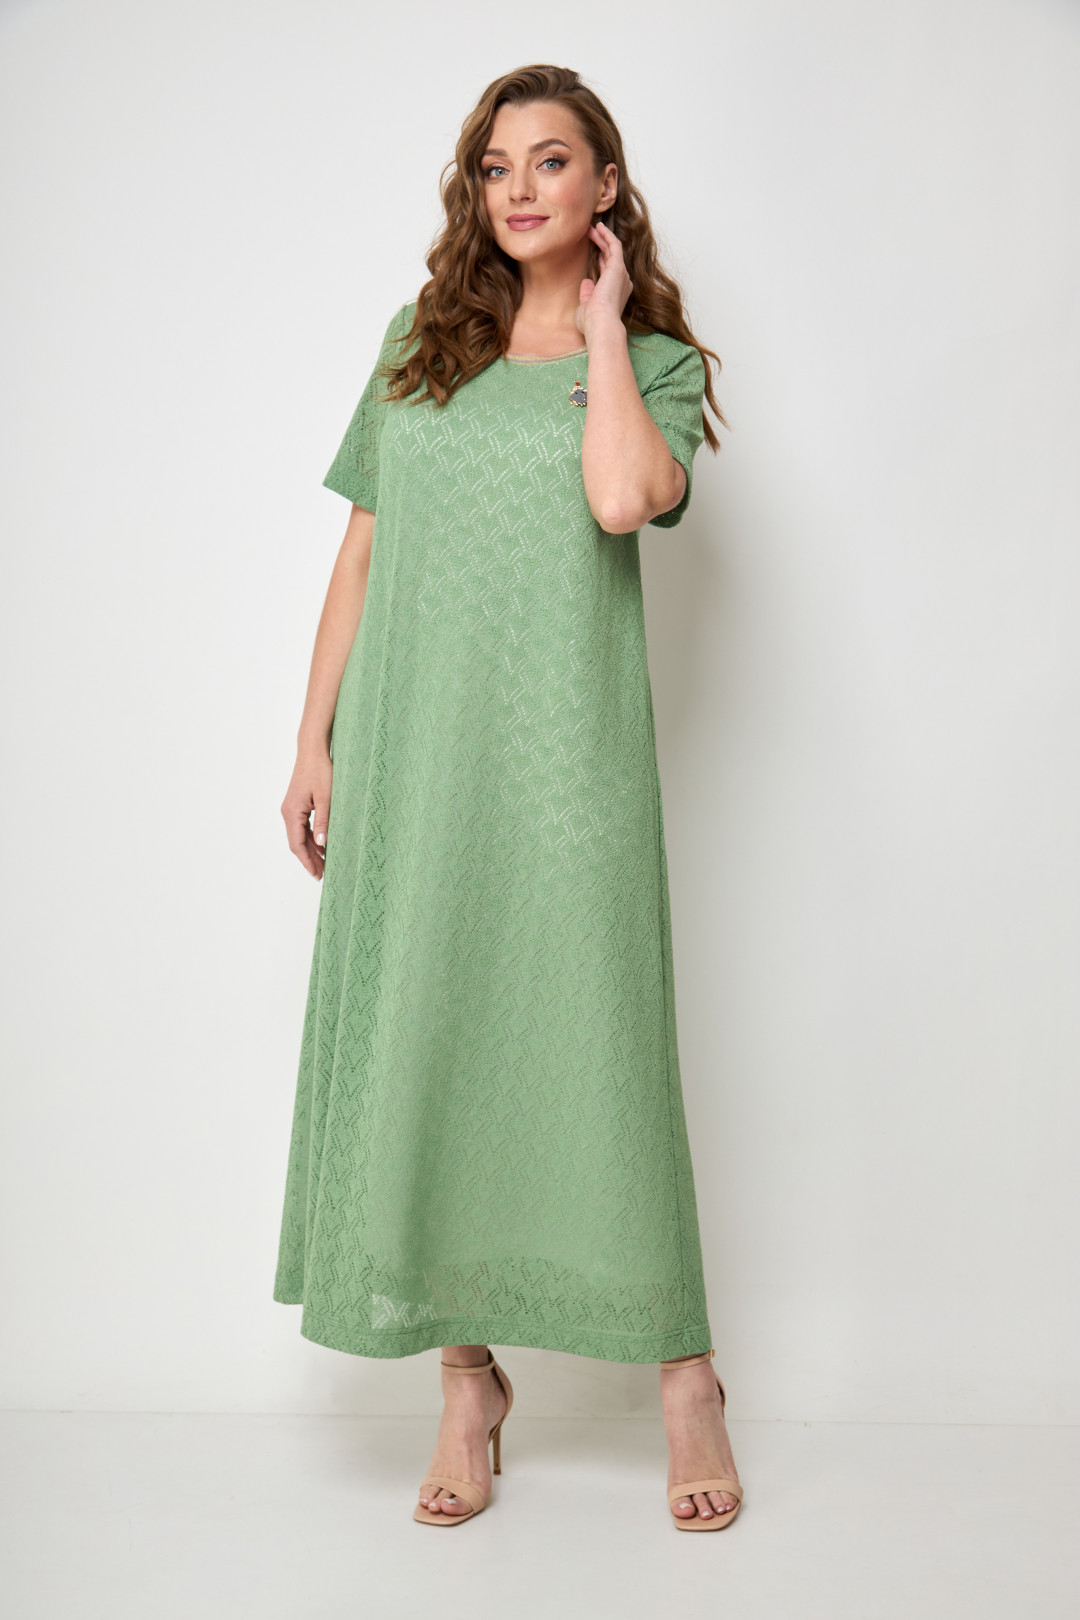 Платье Мишель Шик 2095 зелень